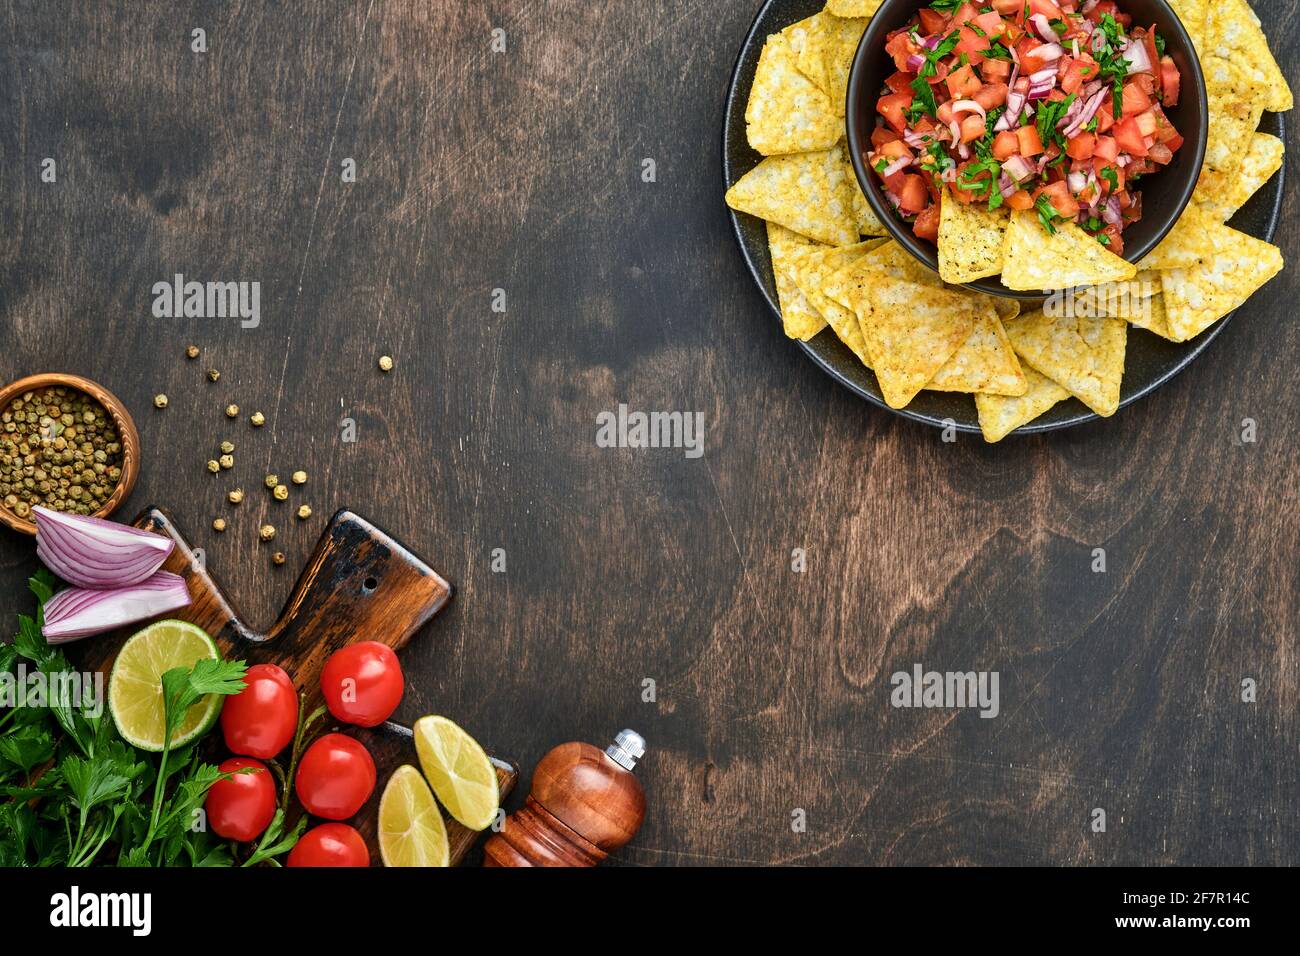 Sauce tomate mexicaine traditionnelle salsa avec nachos et ingrédients tomates, chili, ail, oignon sur fond de bois ancien sombre. Concept d'Amer Latin Banque D'Images